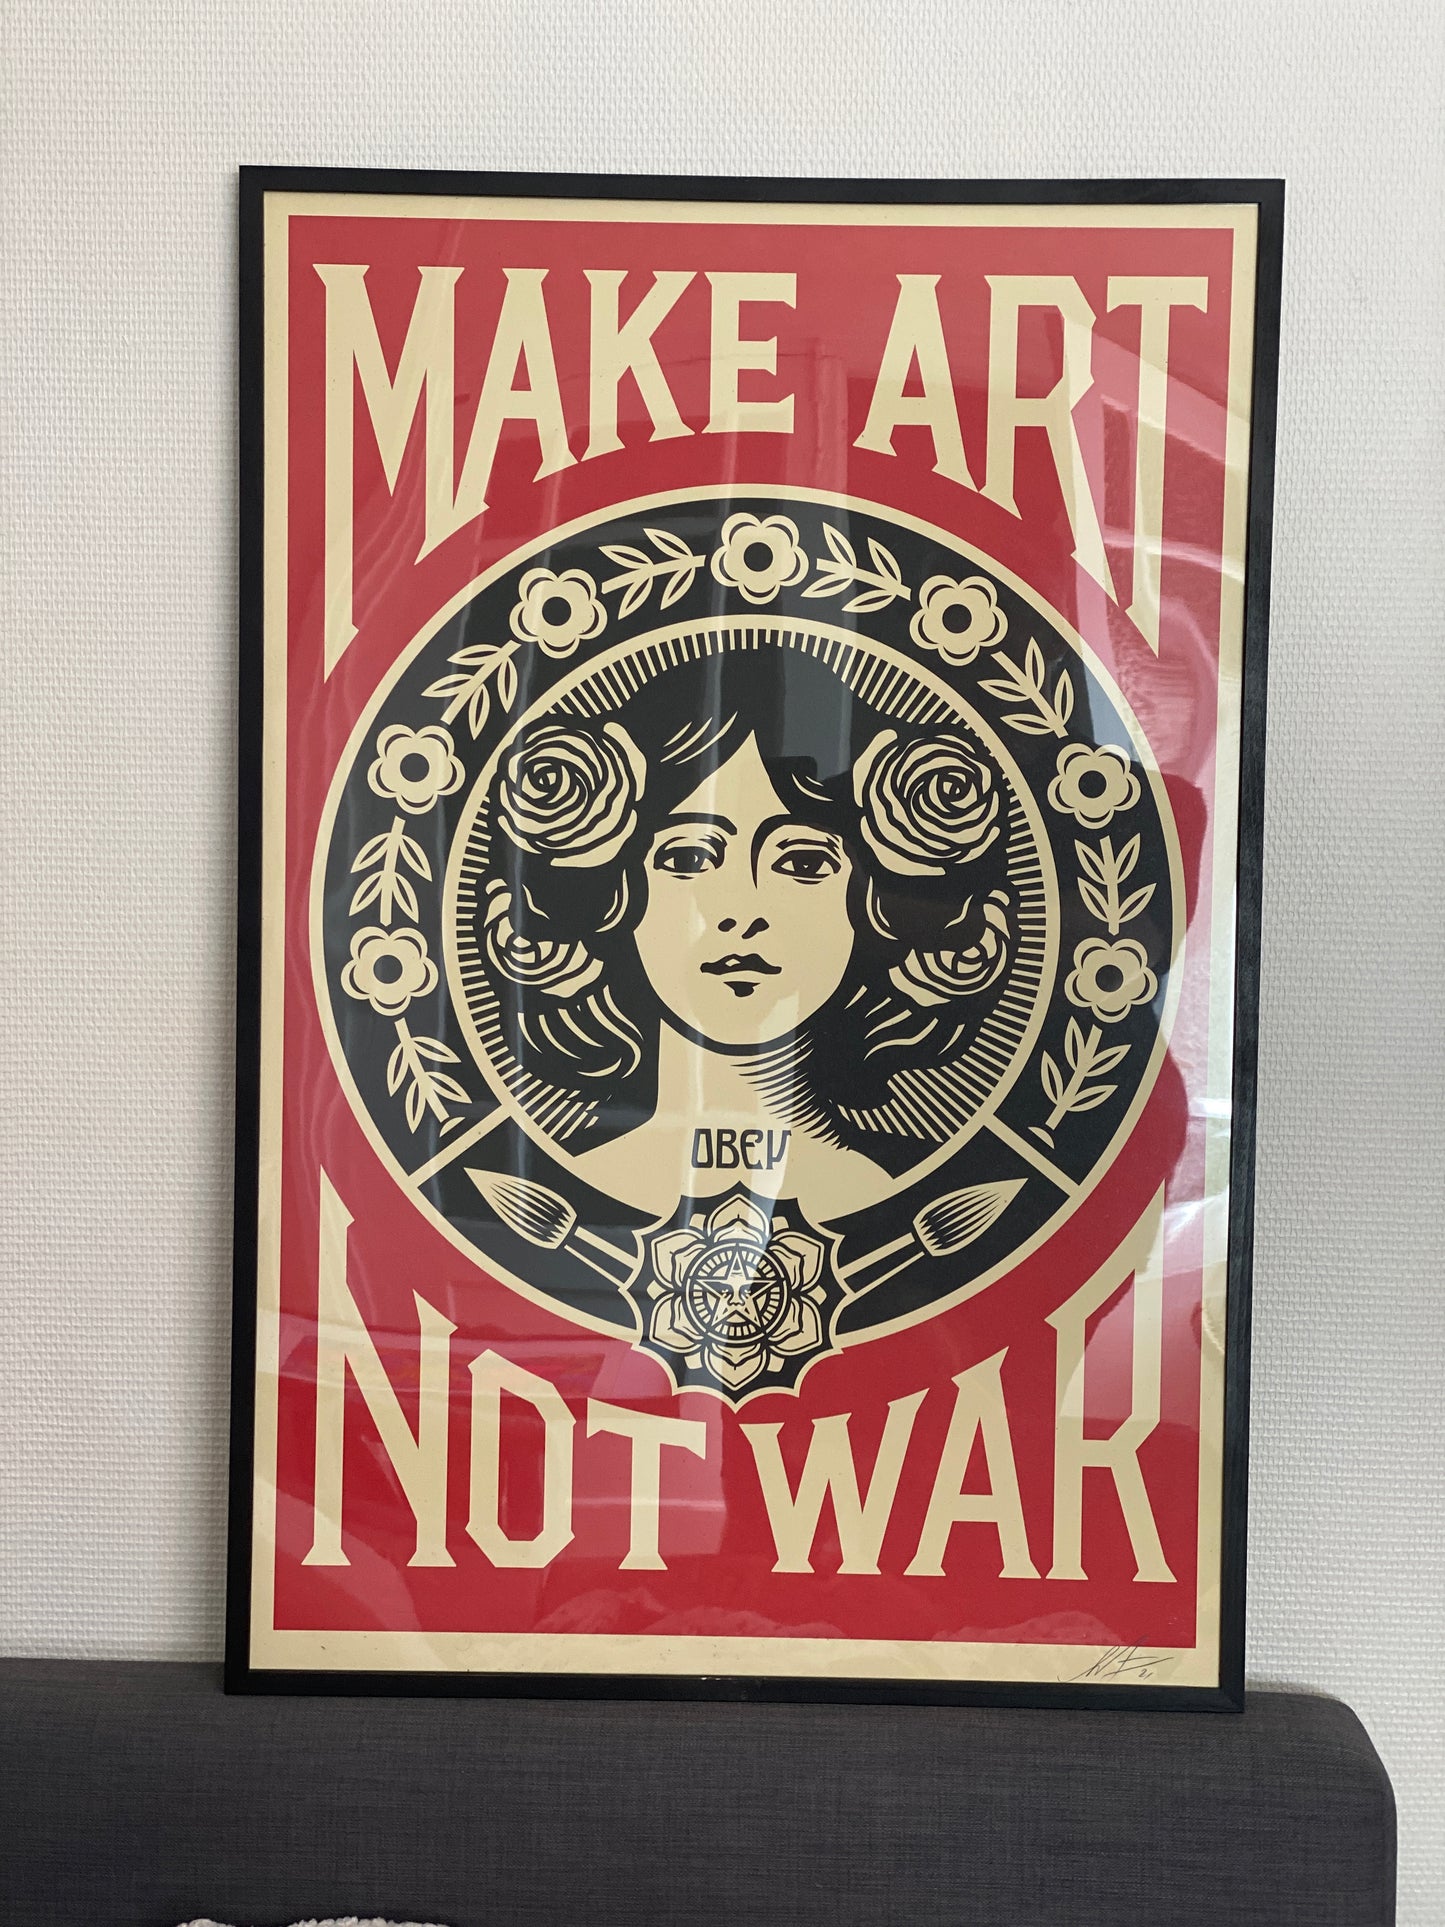 Affiche originale " Make Art Not War 2021" de Shepard Fairey